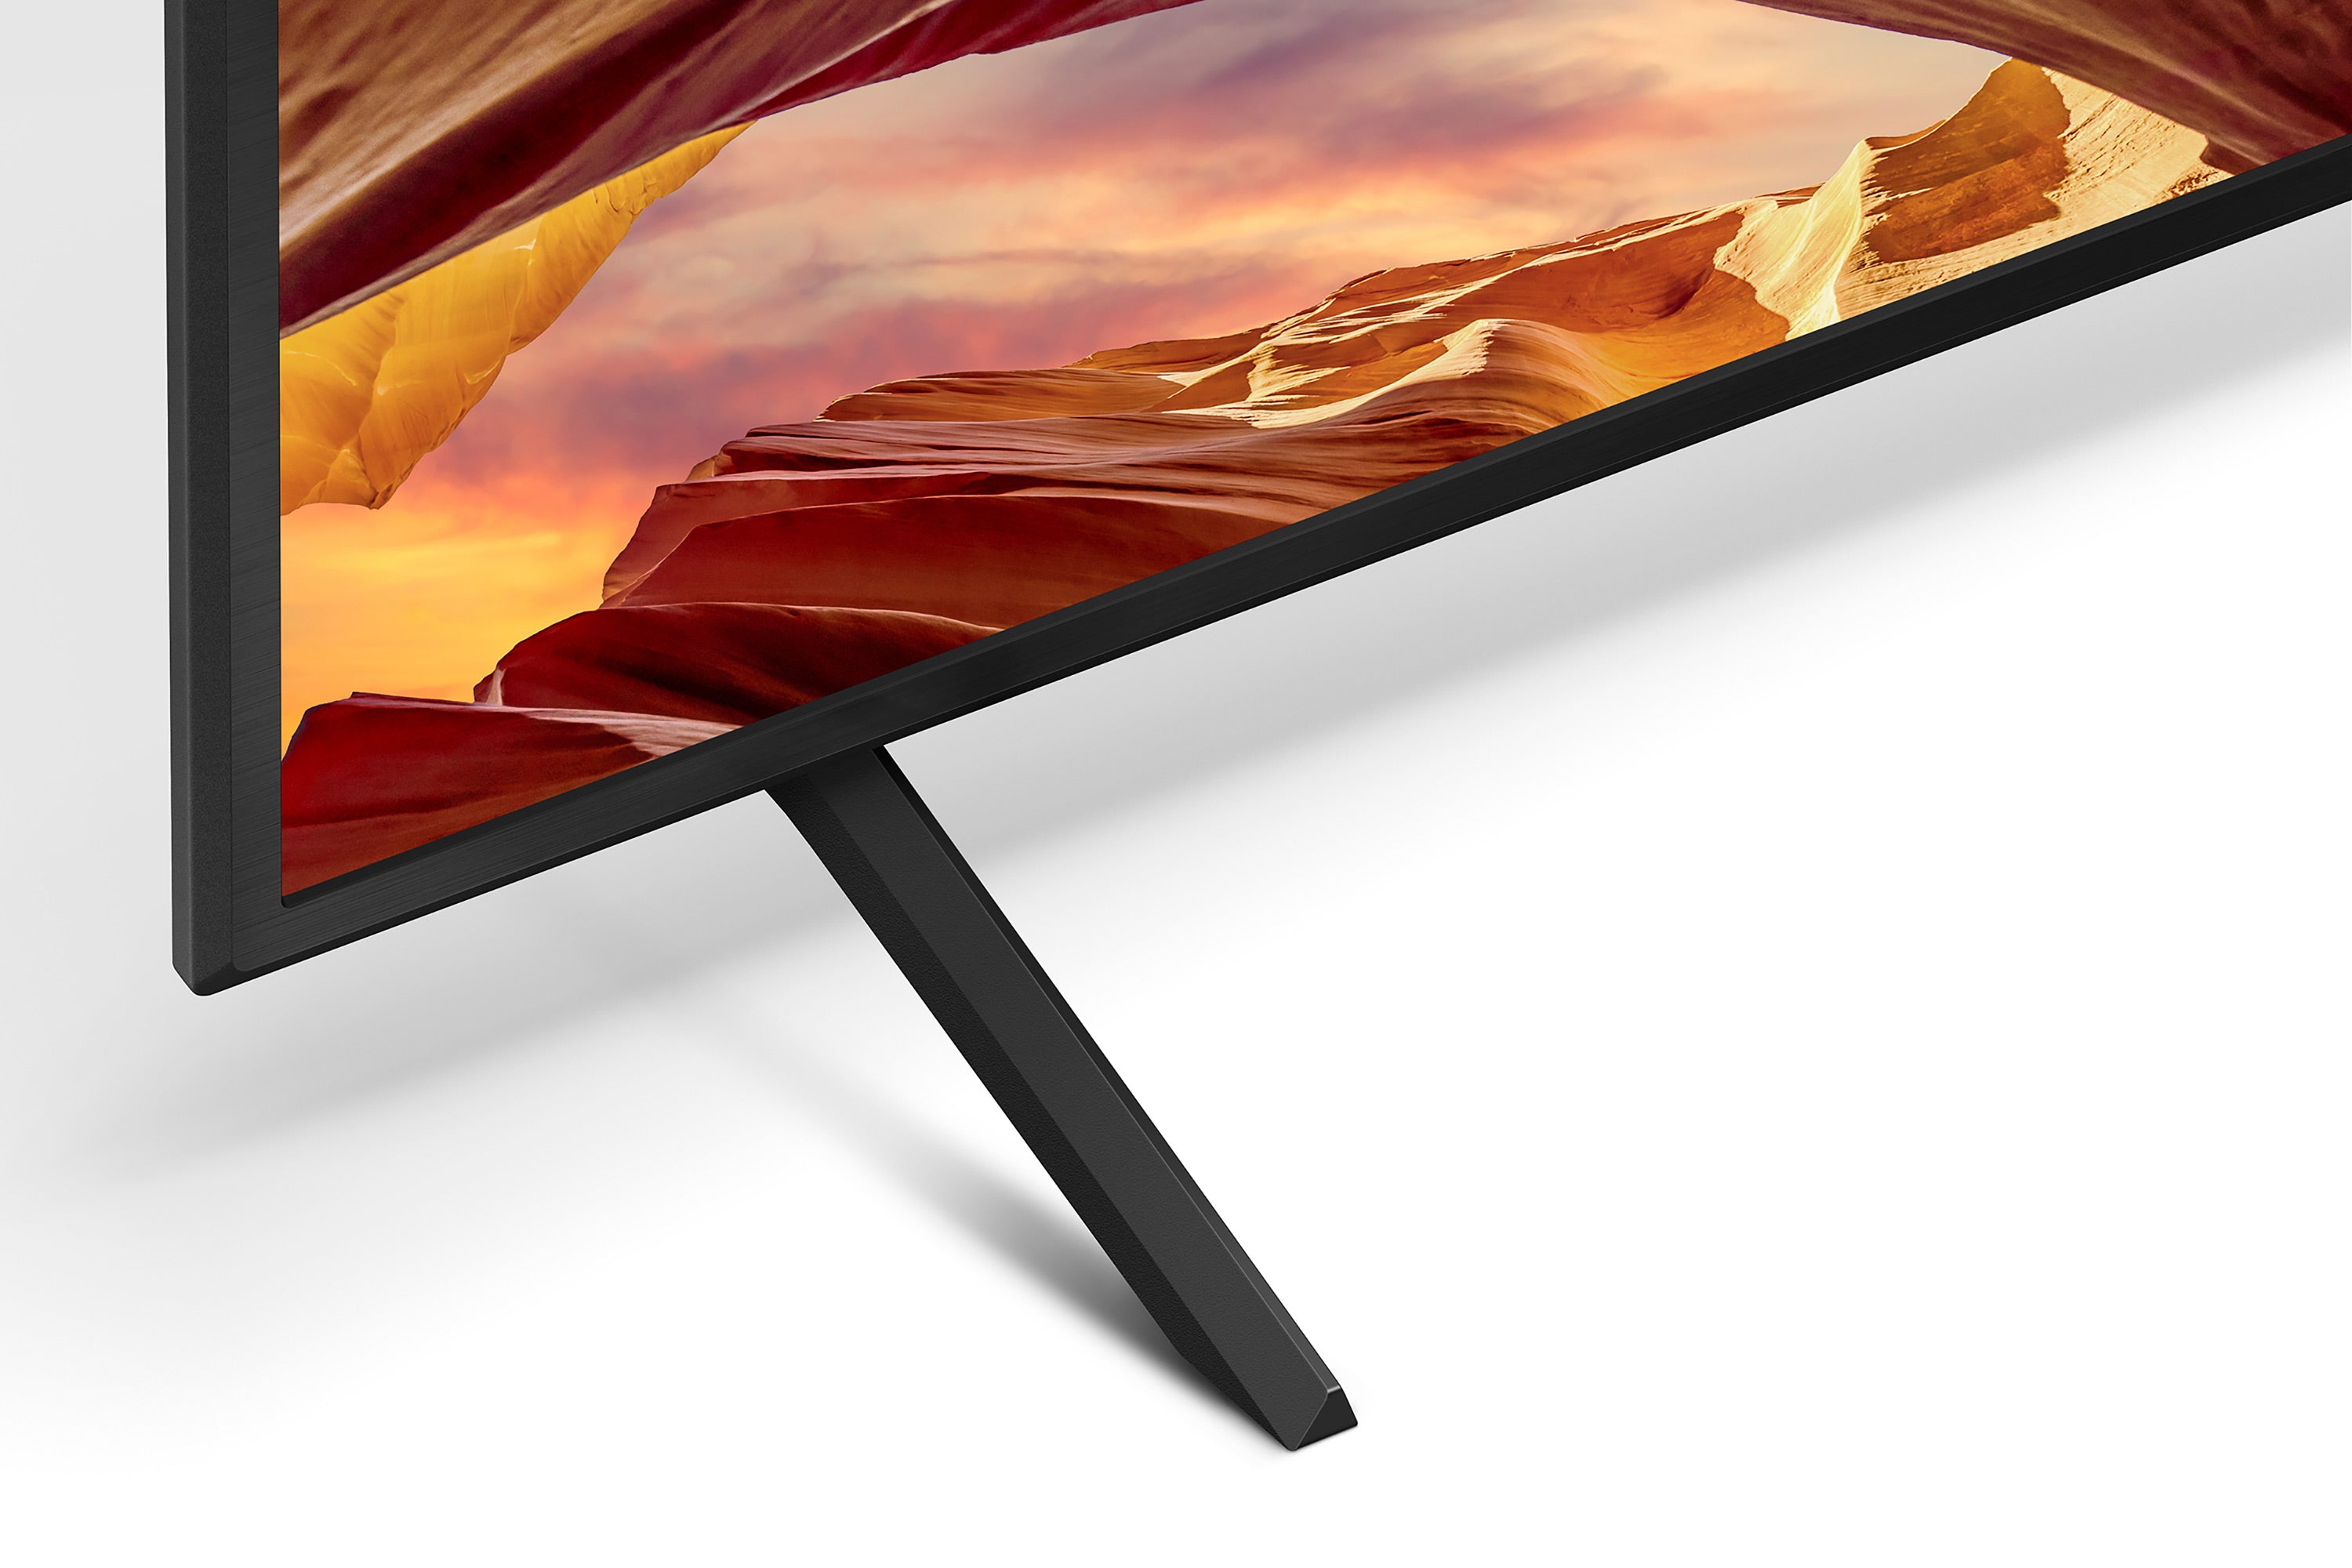 X77L LED | 4K HDR TV | Smart TV (Google TV)